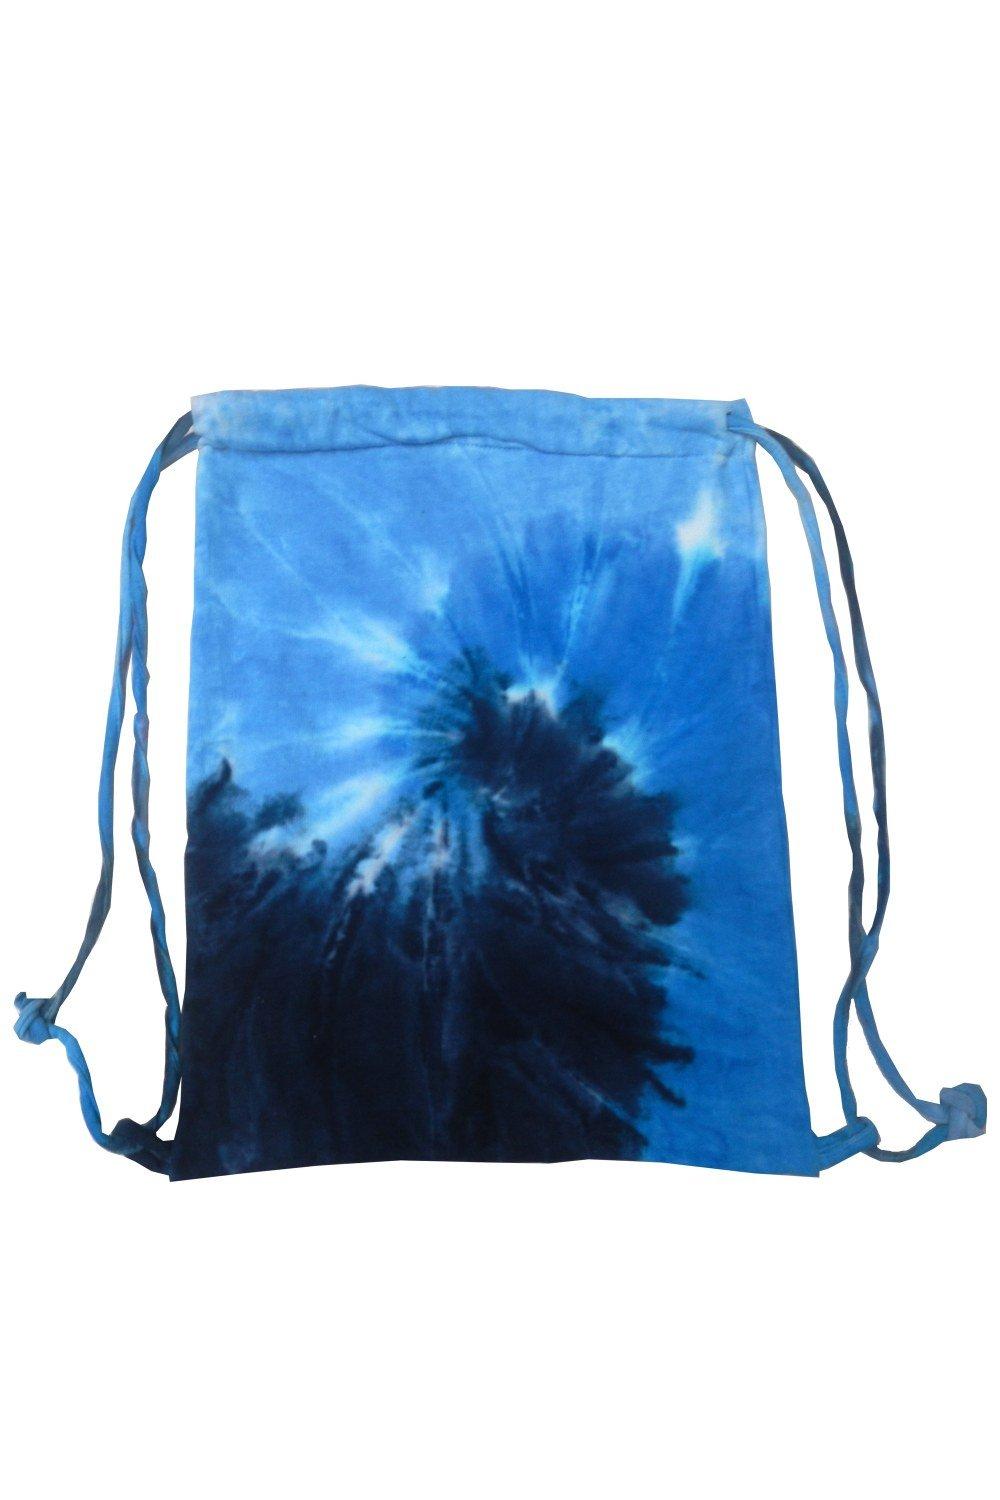 Спортивная большая сумка на шнуровке Tie Dye Colortone, синий спортивная сумка на нижнее сиденье 18 дюймов подушка для духов frontier aa south west sun country airlines черная